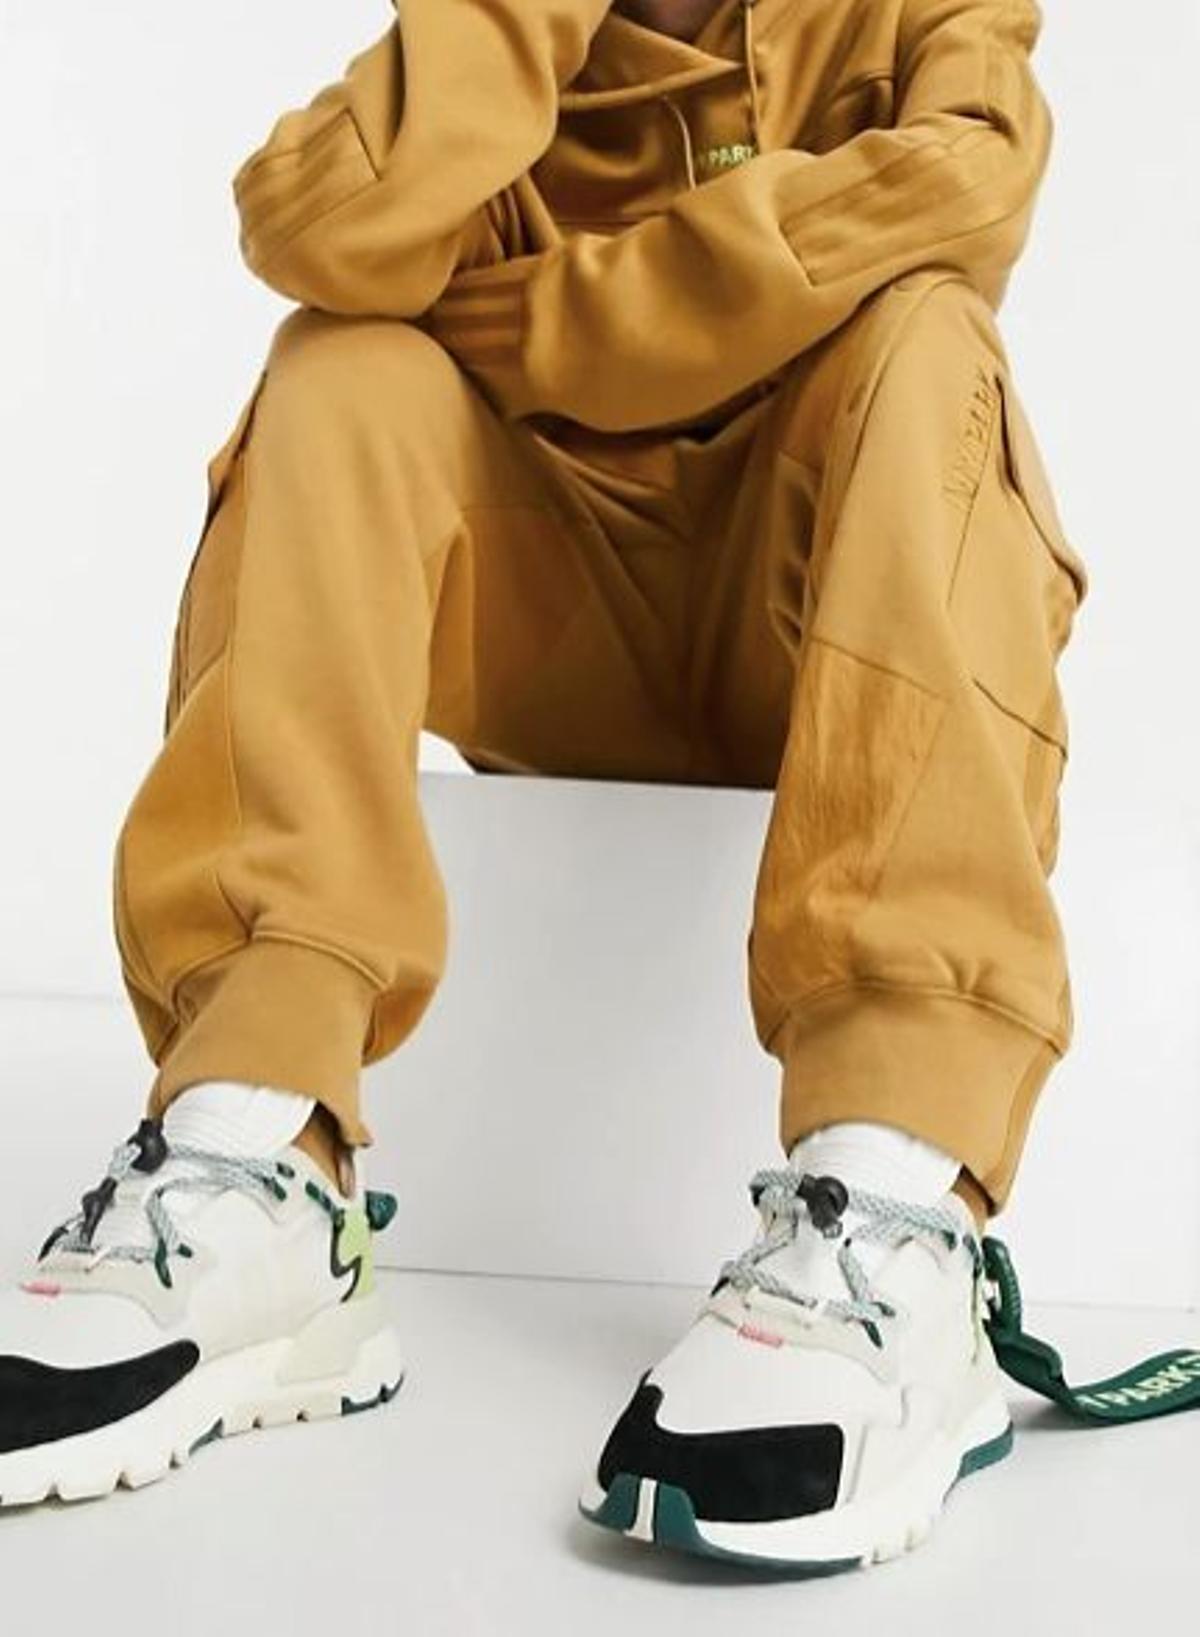 Zapatillas de deporte color hueso con detalles verdes Nite Jogger de adidas x IVY PARK